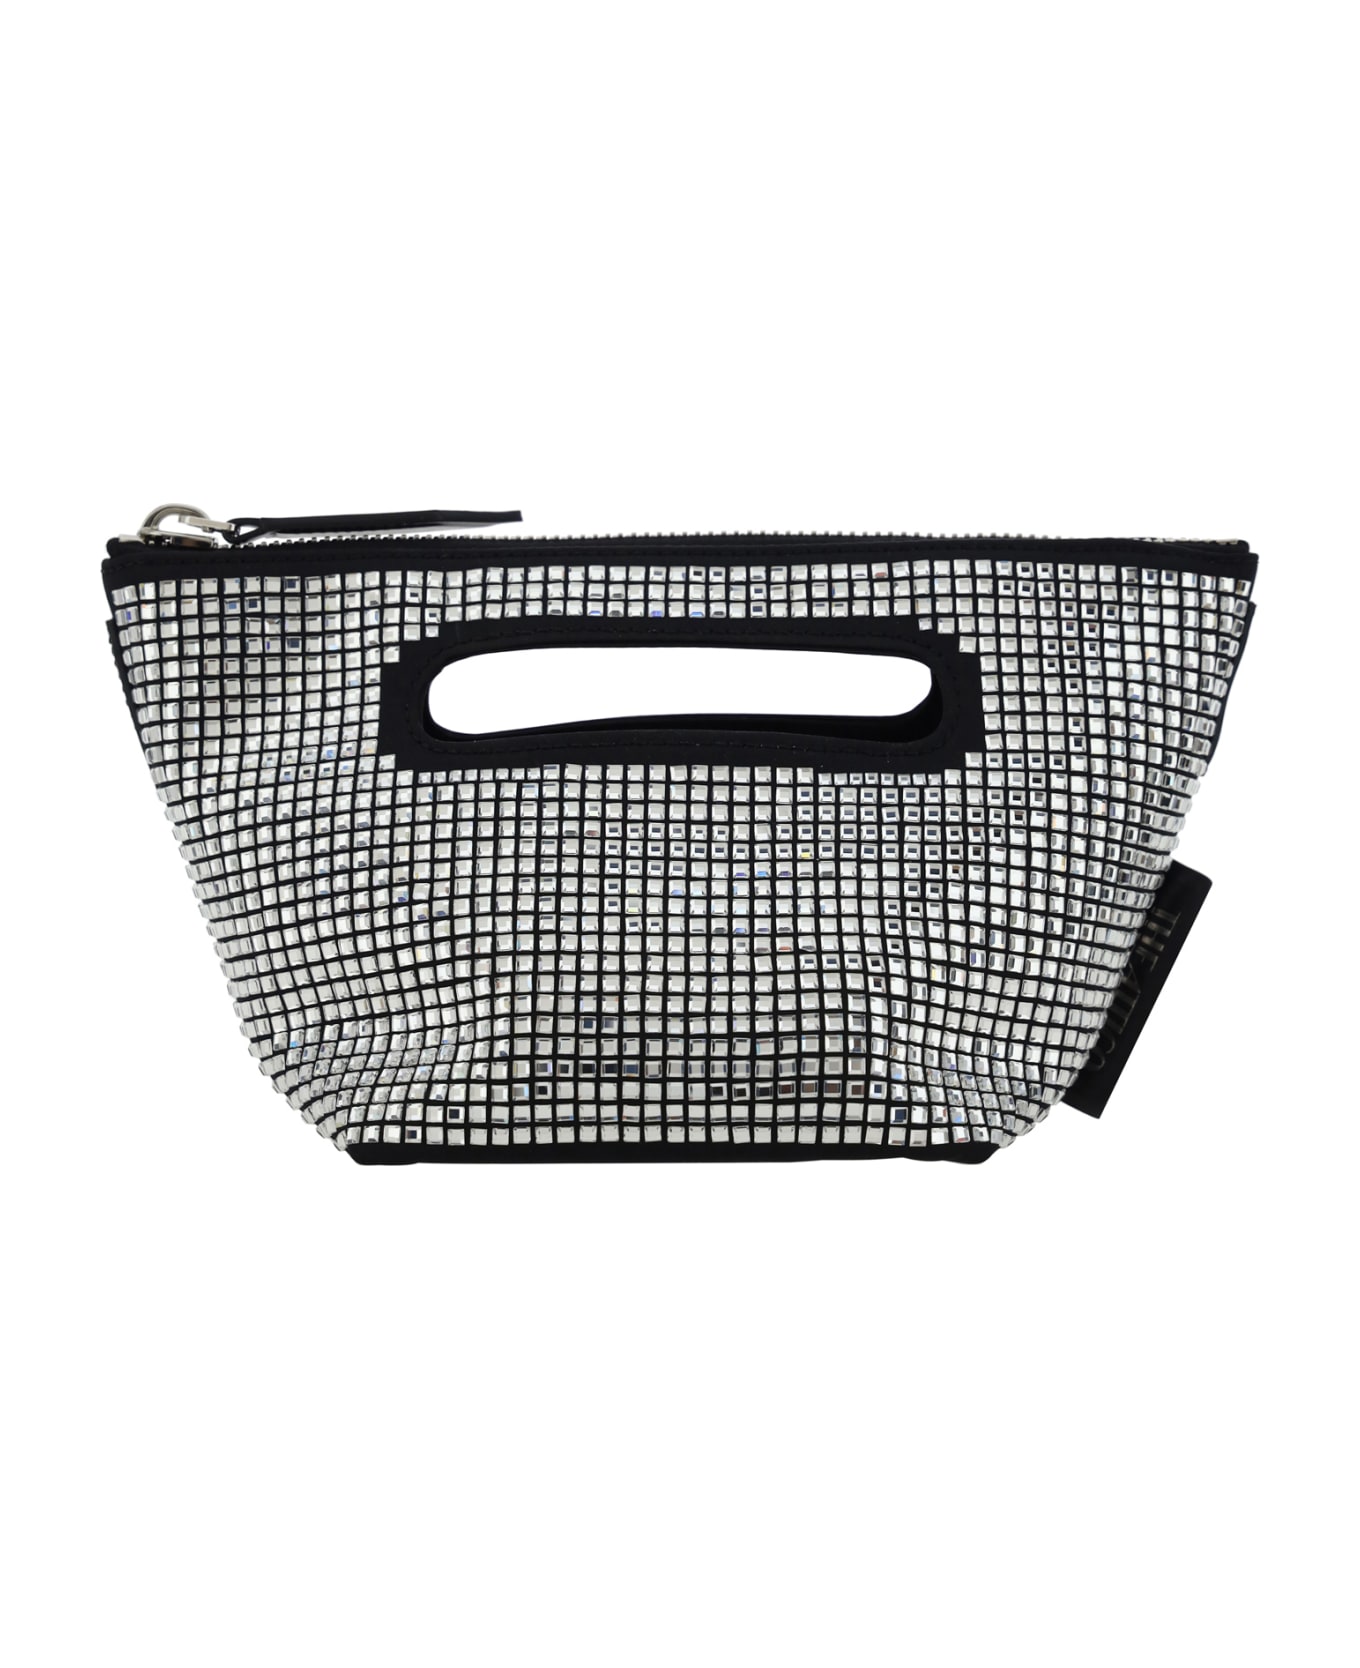 The Attico Via Dei Giardini 15 Handbag - Black/crystal